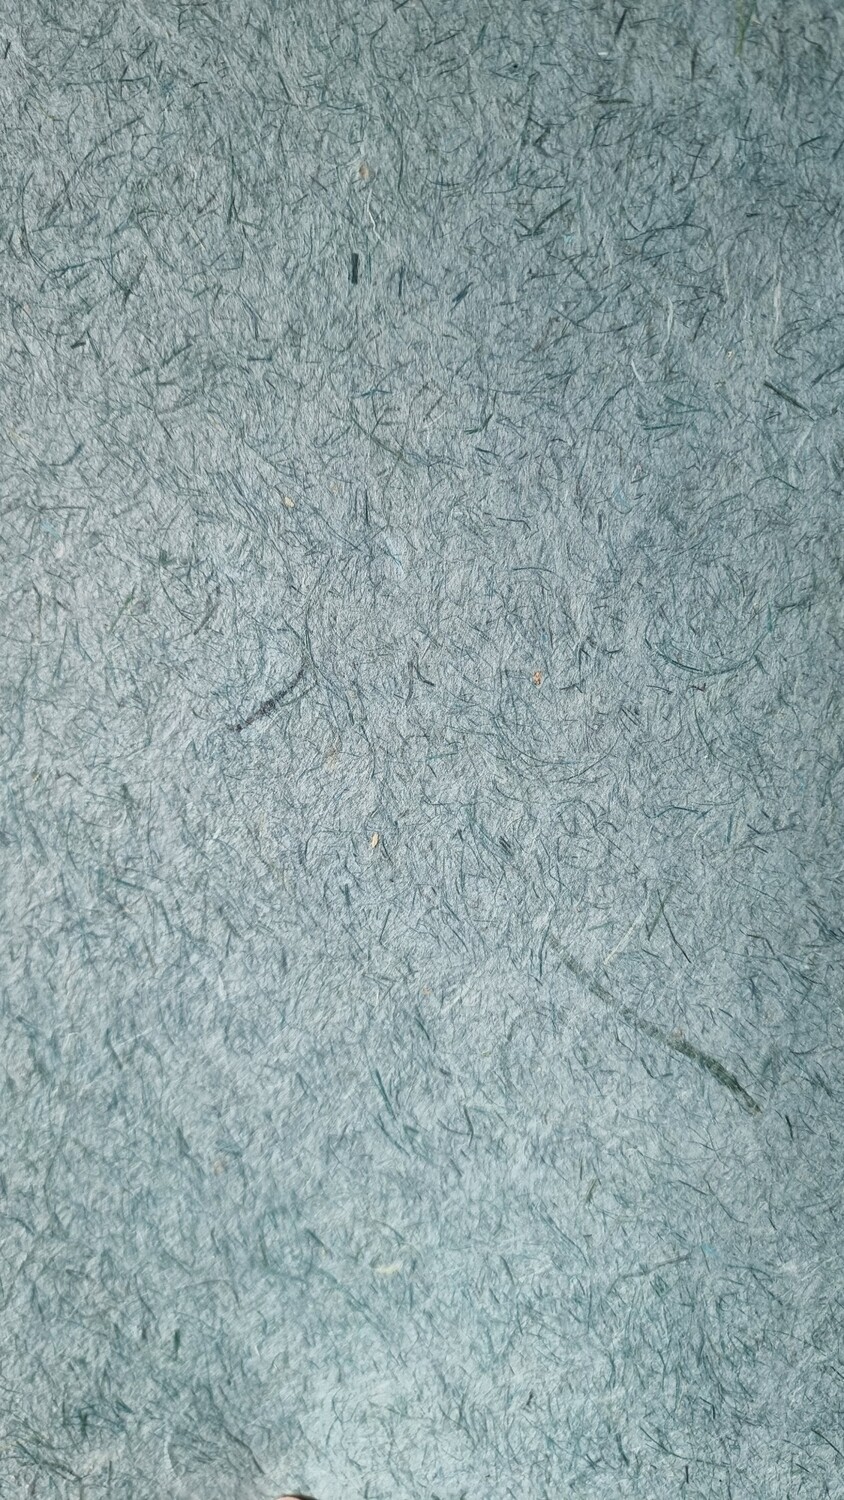 Graspapier hangeschöpft türkis